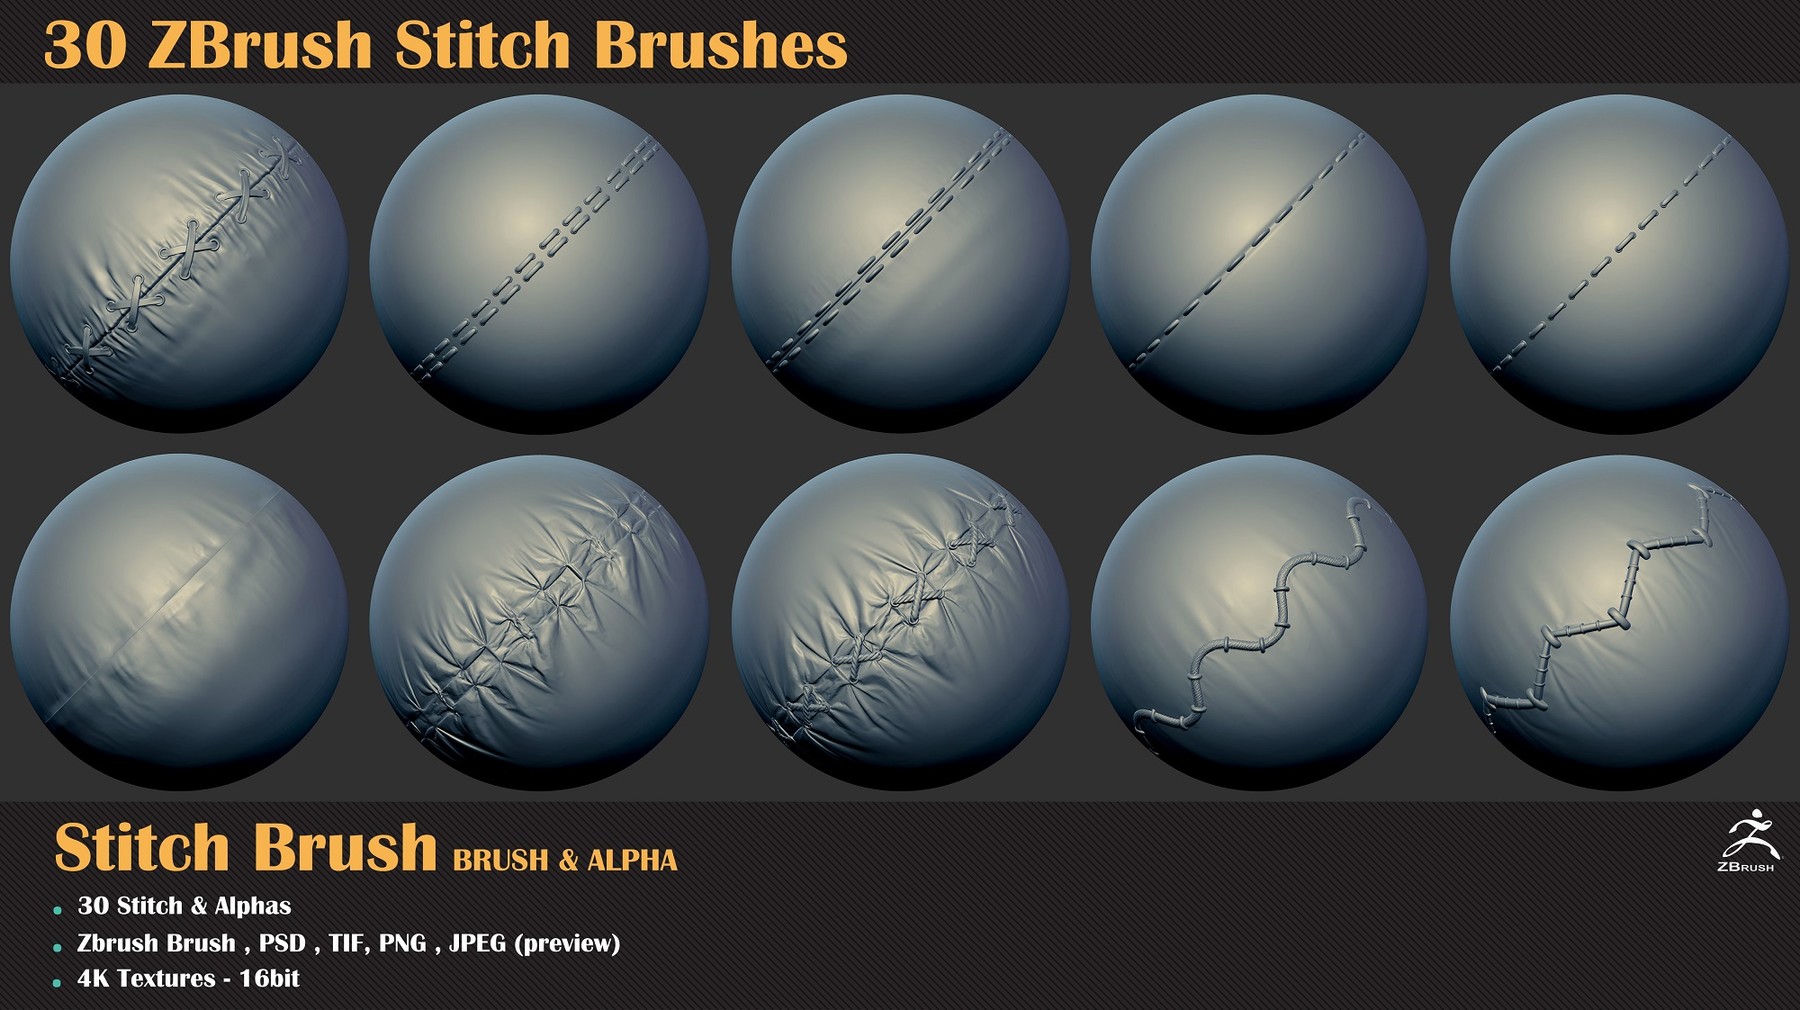 zbrush stitch brush free download